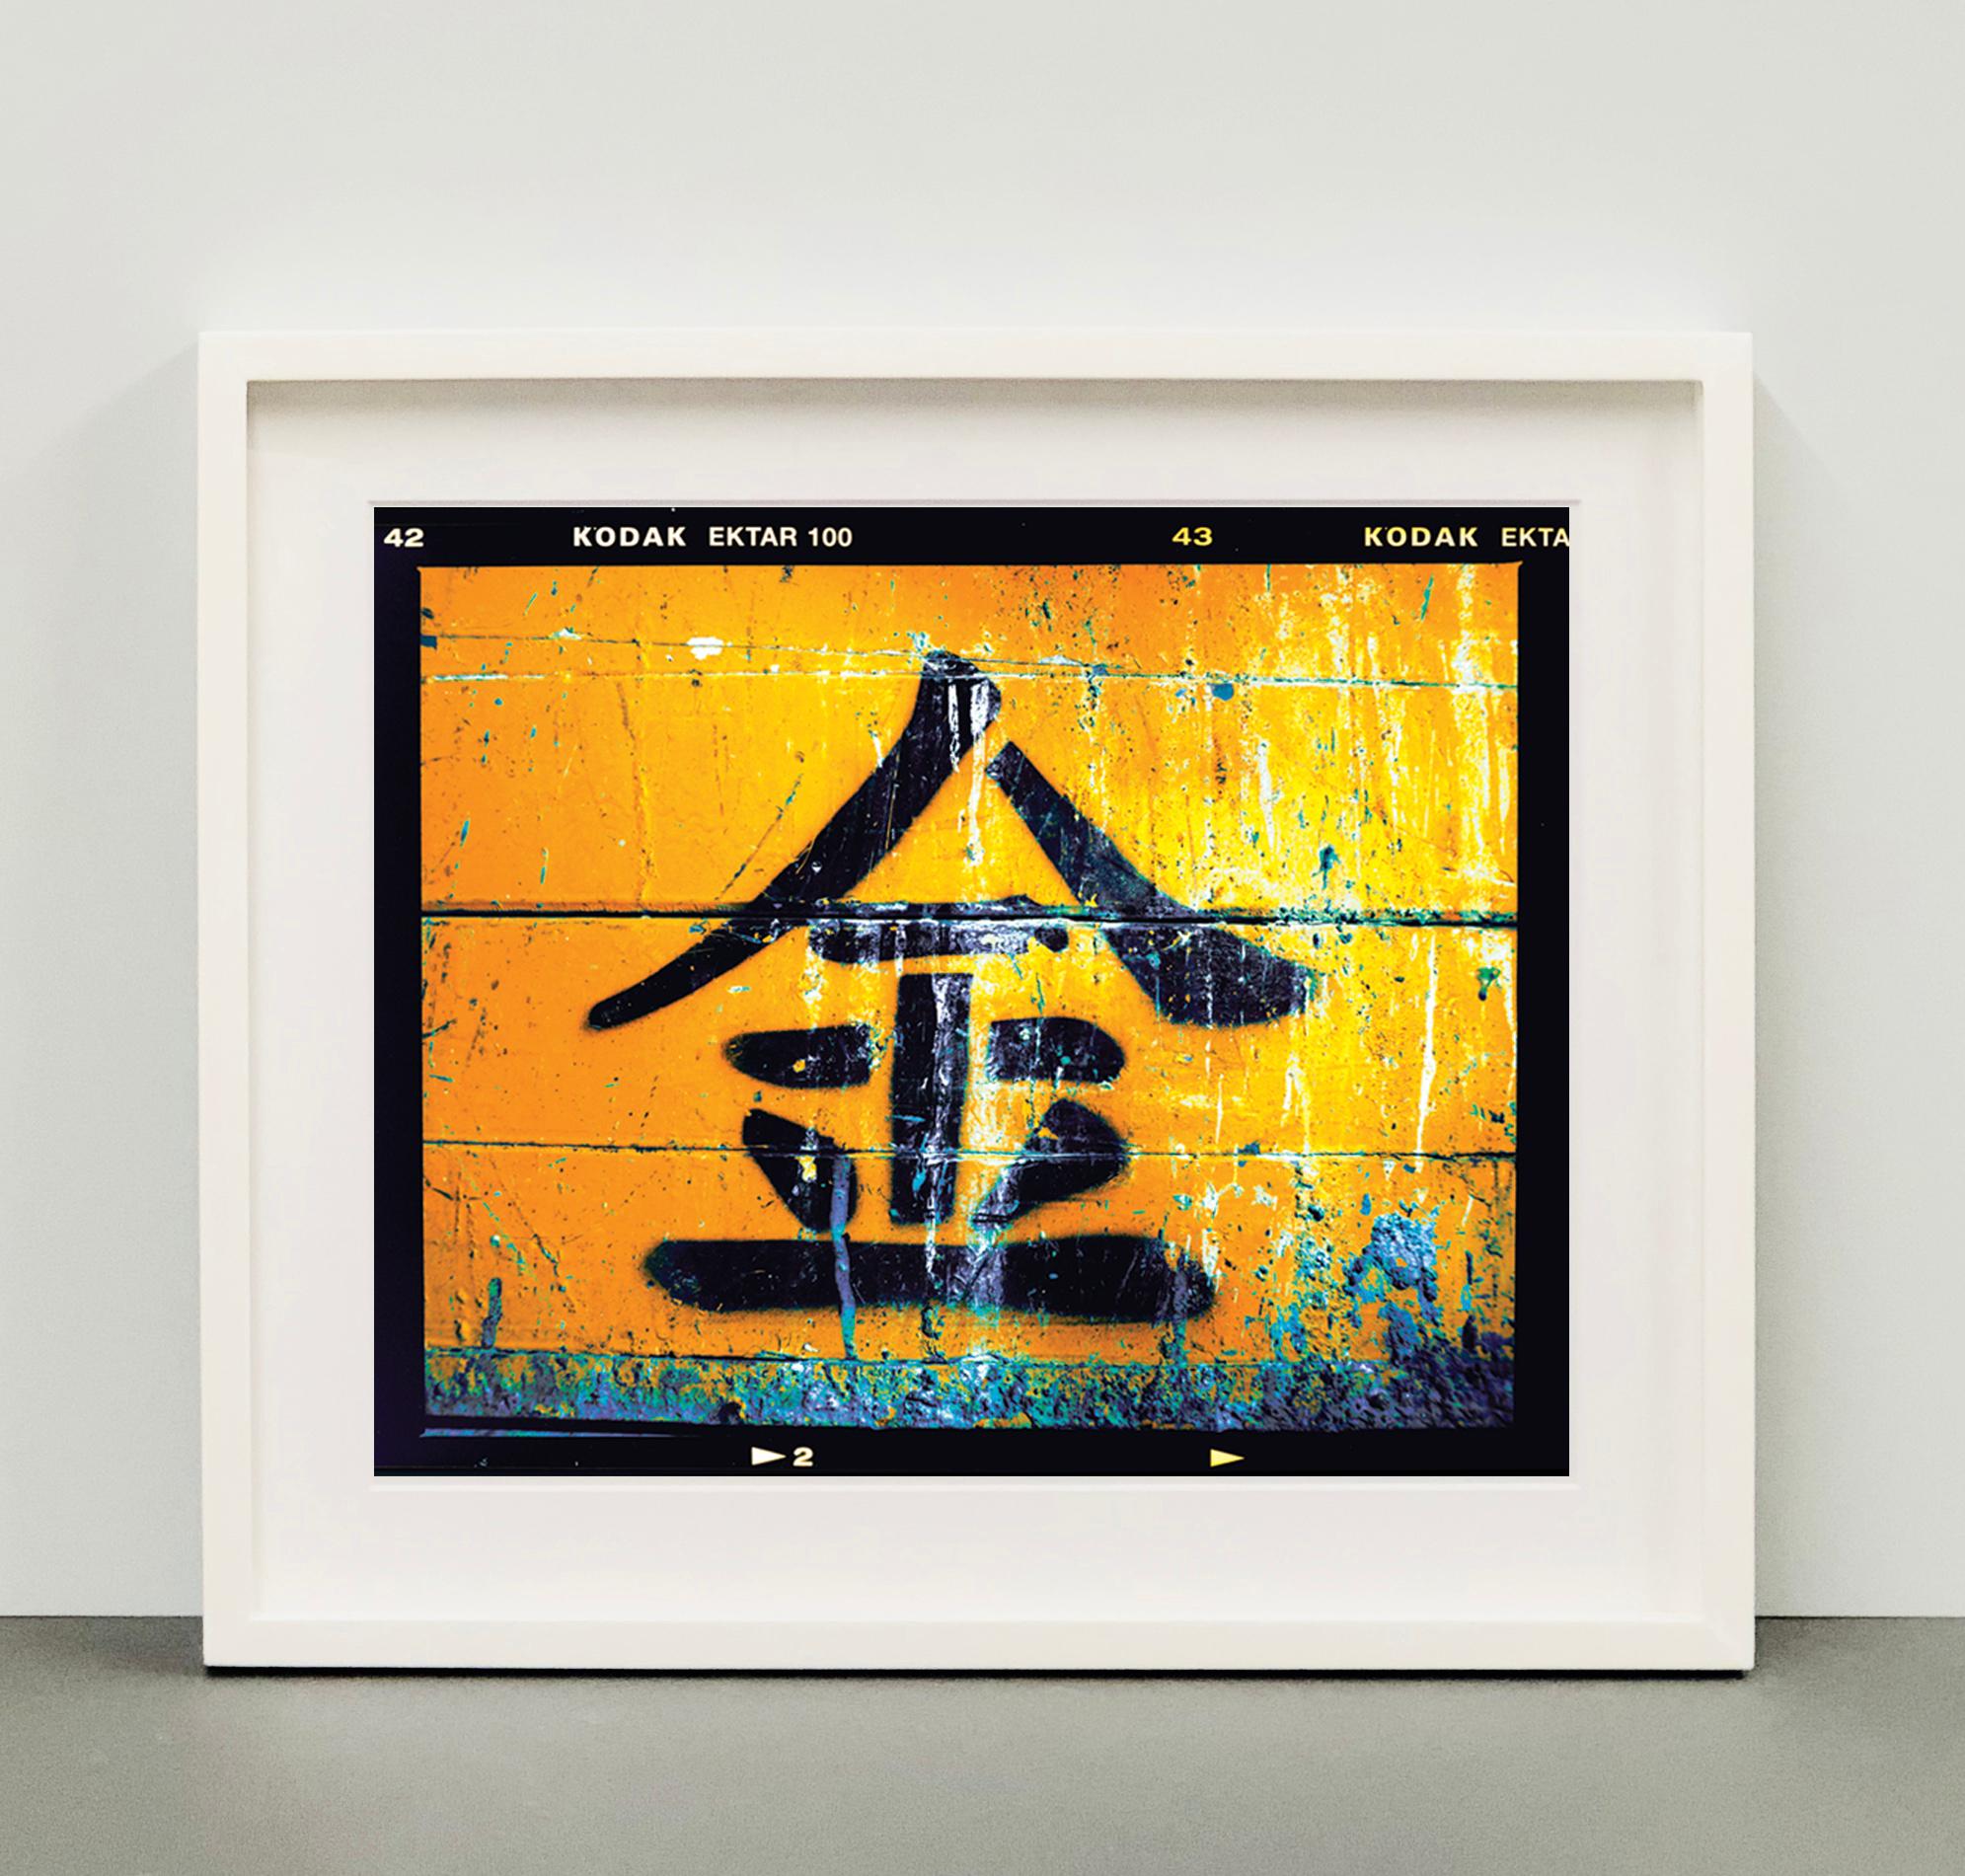 Gold, tiré de la série The Streets of Hong Kong (2016) de Richard Heeps. L'idée de la série était de représenter la nature intrinsèque de Hong Kong, l'idée de couches et de lumière. Dans la plupart de ses œuvres, on retrouve un motif linéaire ainsi